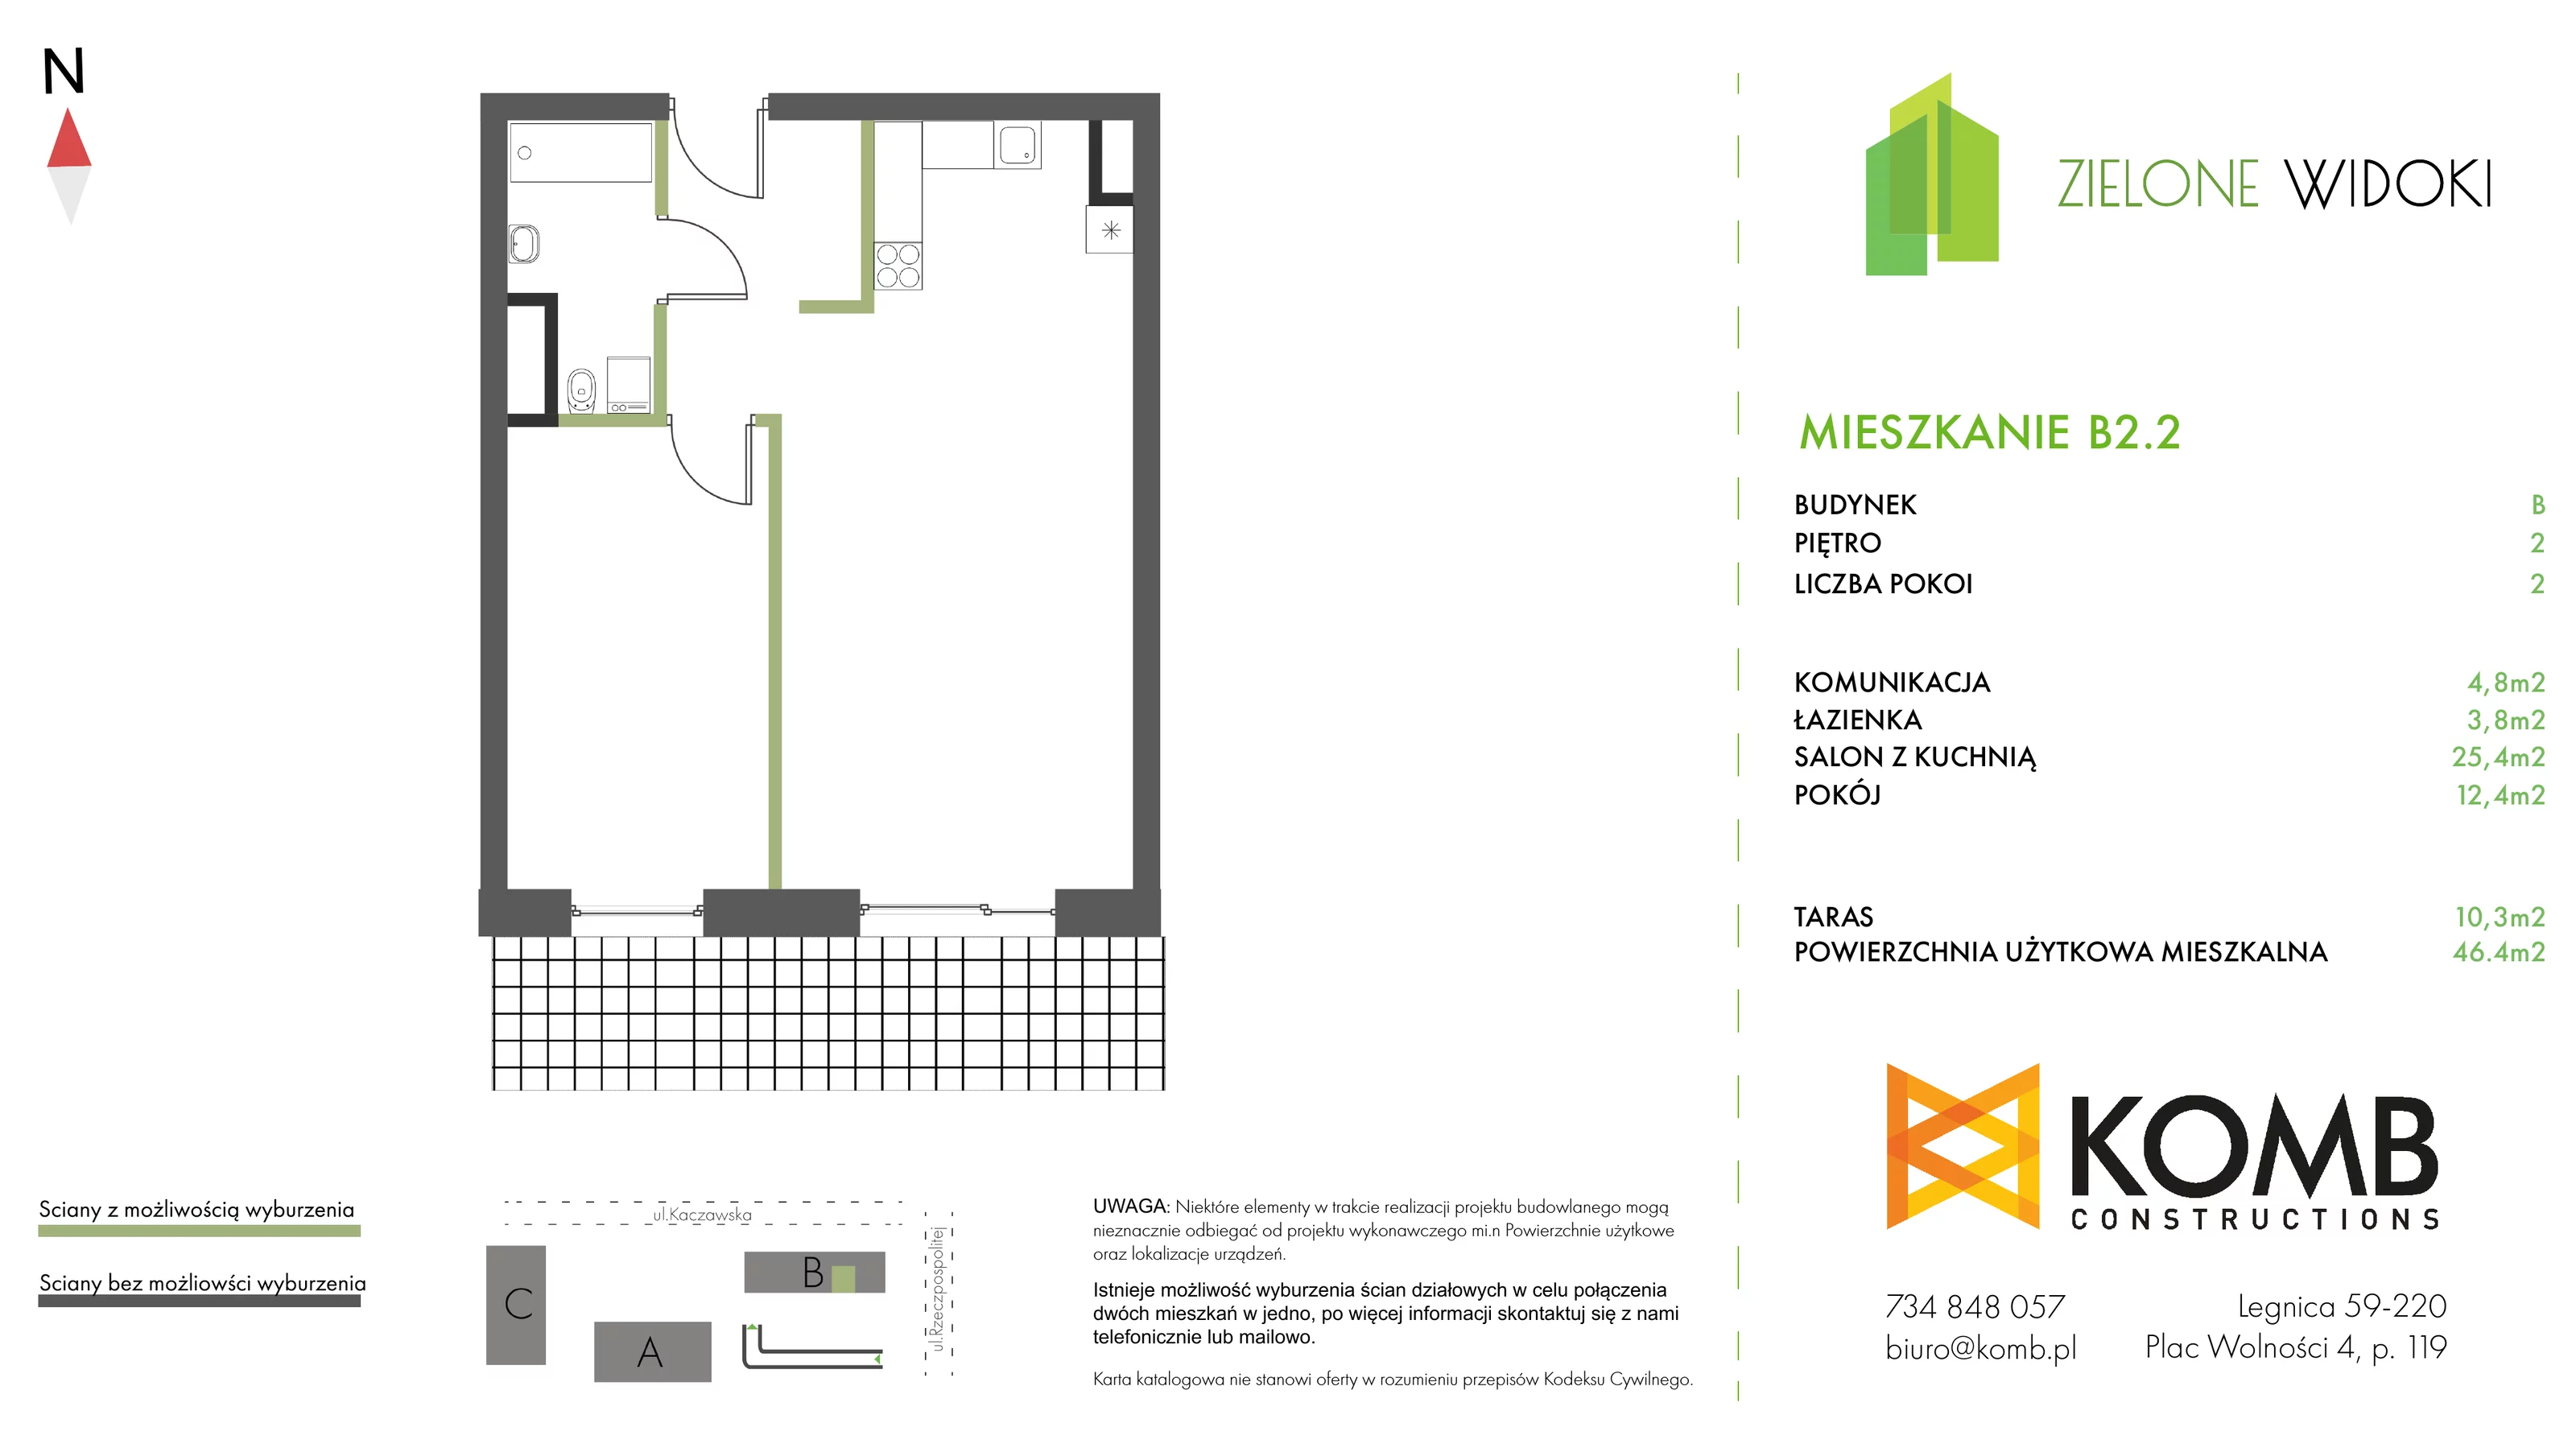 Mieszkanie 46,40 m², piętro 2, oferta nr B2.2, Zielone Widoki, Legnica, Bielany, al. Rzeczypospolitej 23